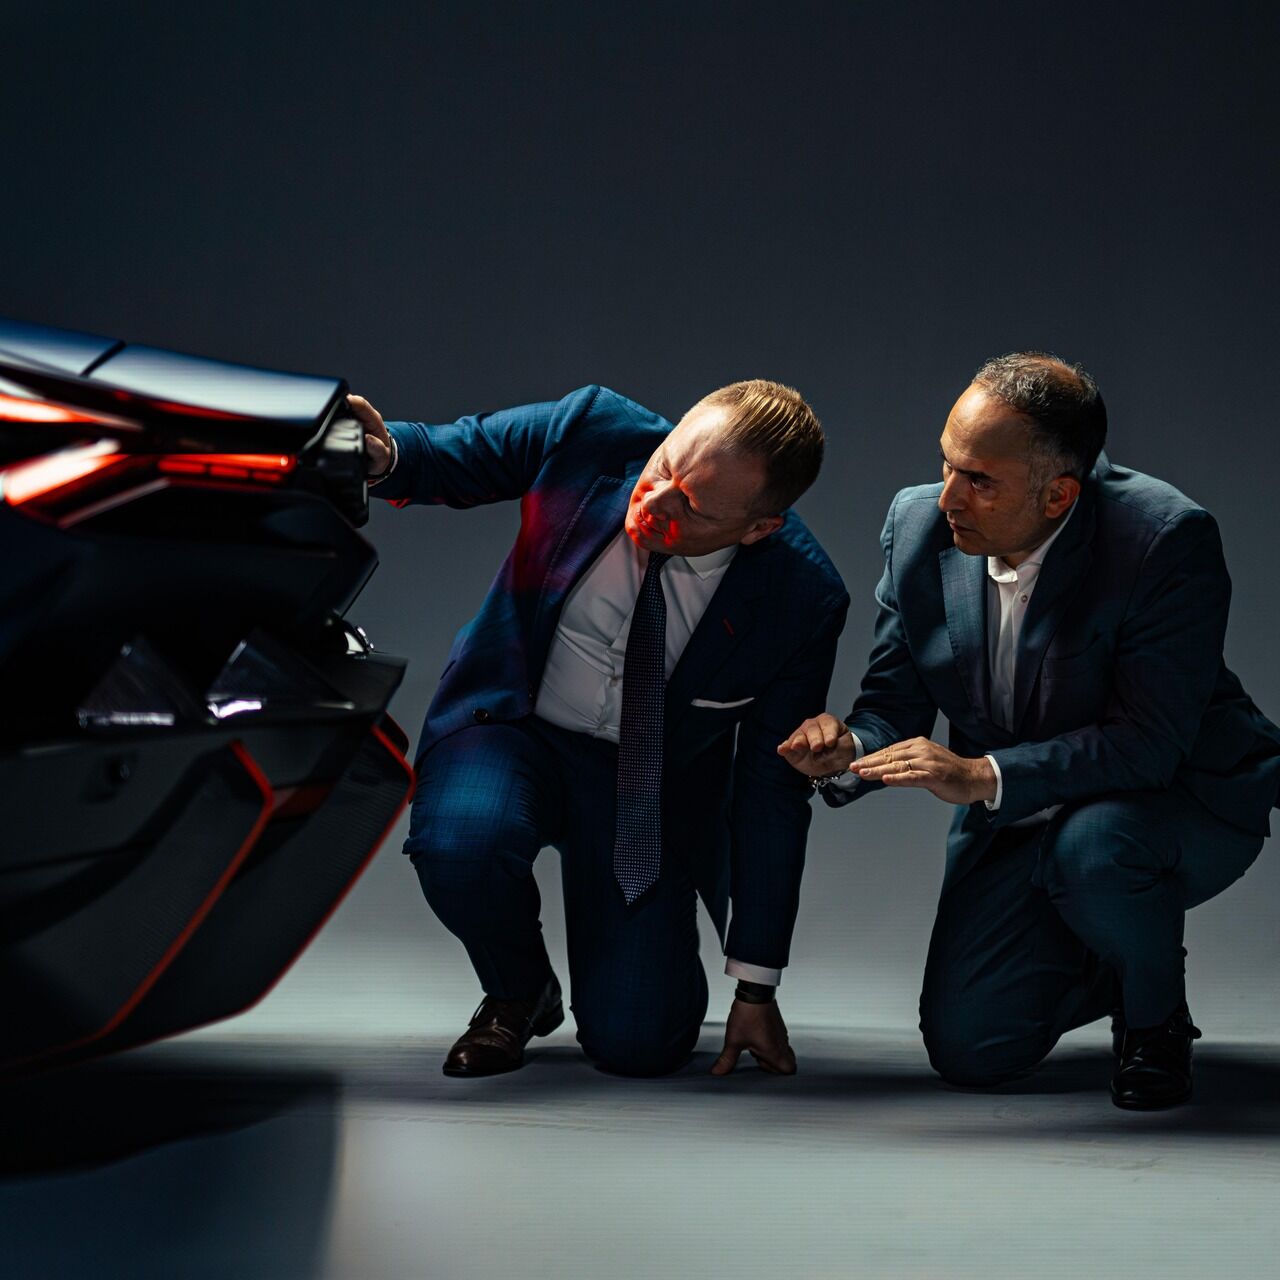 Thiết kế và khí động học: Mitja Borkert và Ugo Riccio của Automobile Lamborghini